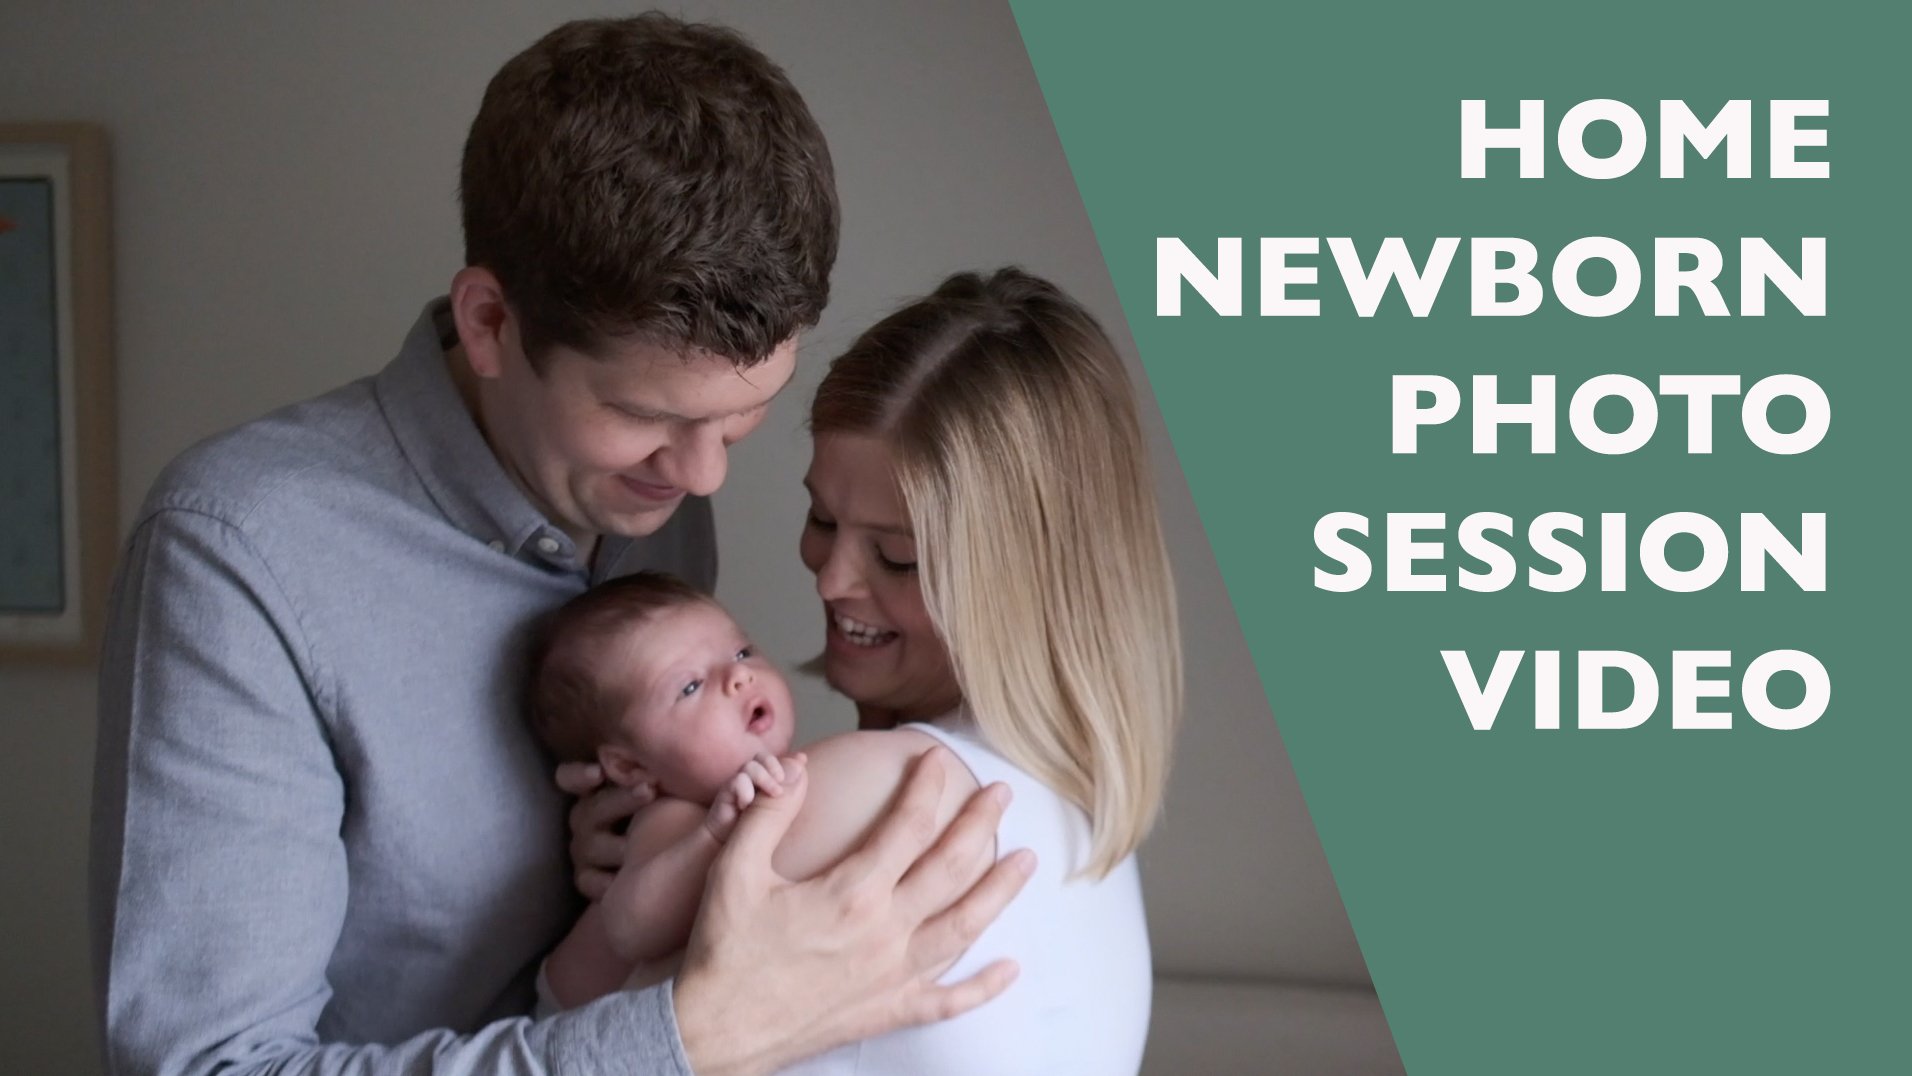 Home newborn photoshoot video